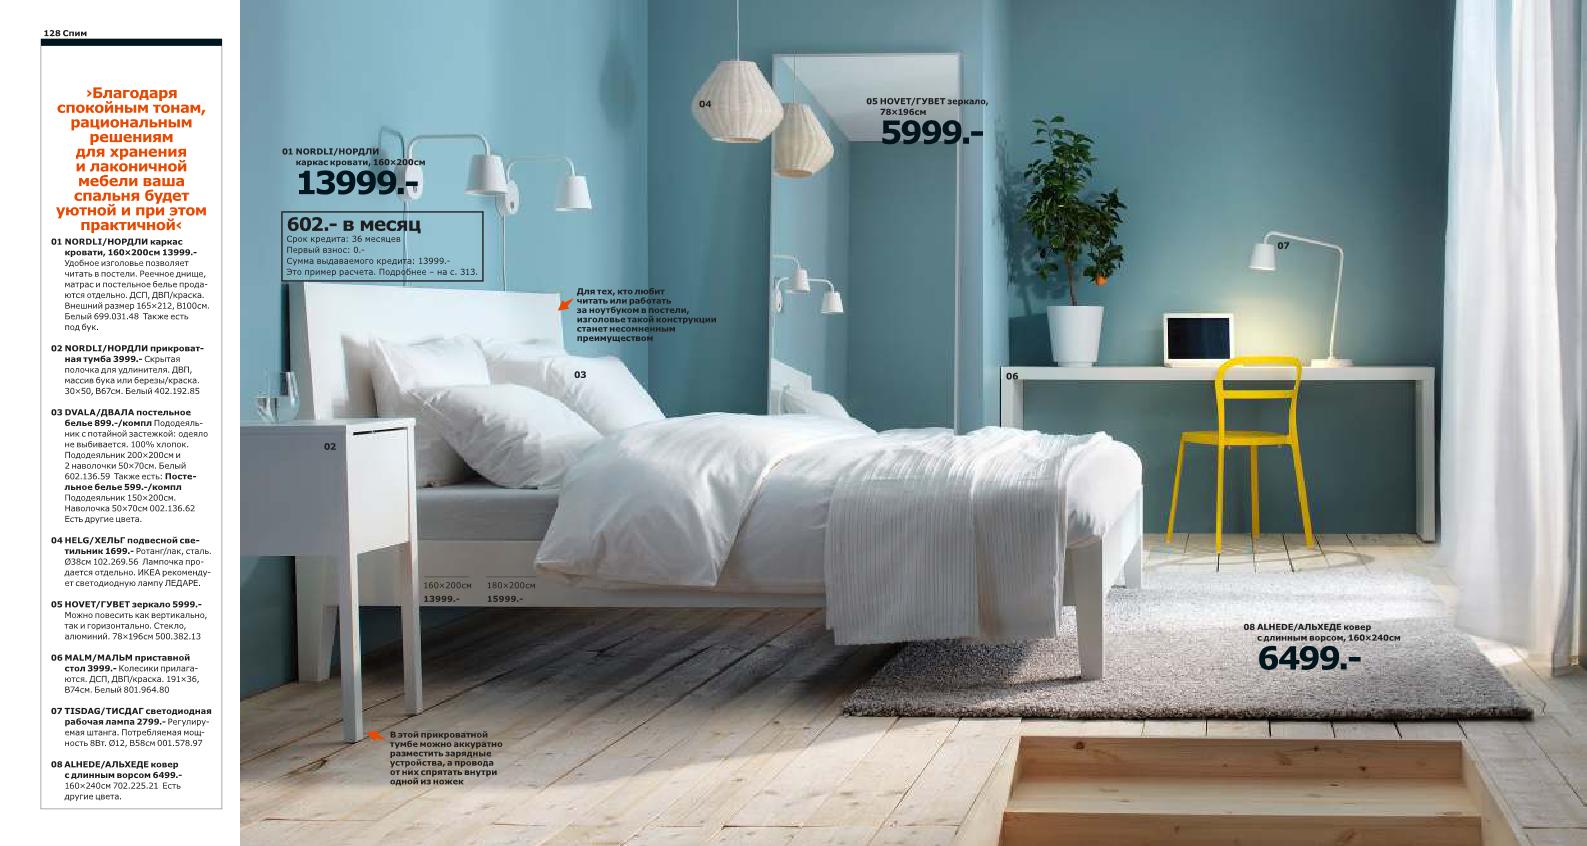 Обзор каталога IKEA 2014